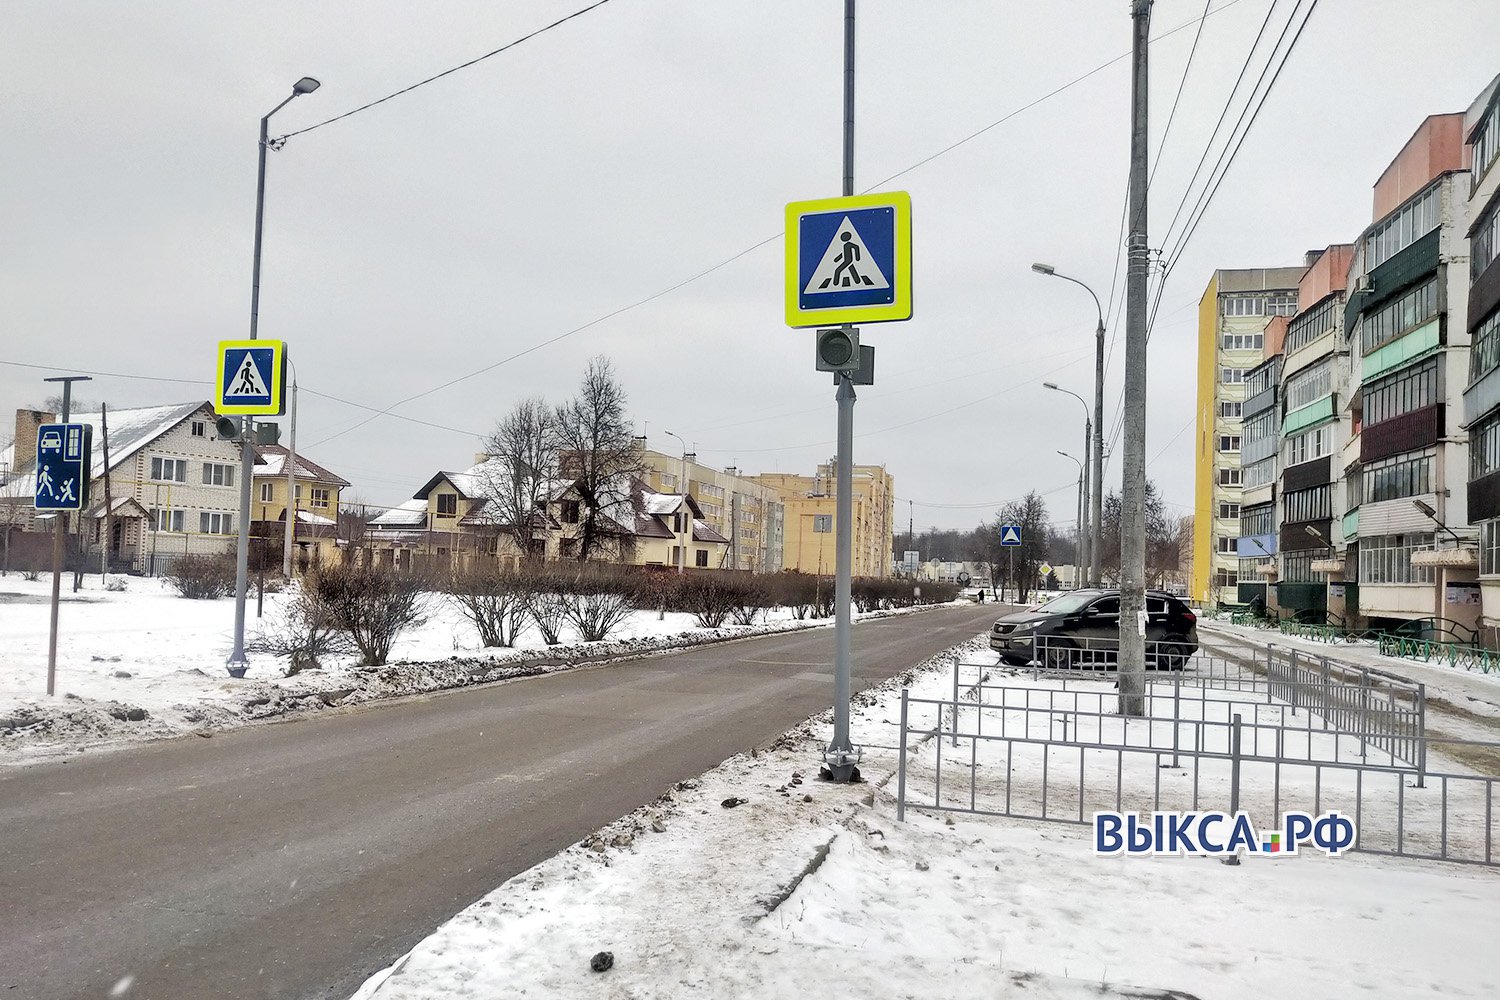 Обслуживание дорожных знаков обойдётся в 800 тысяч рублей